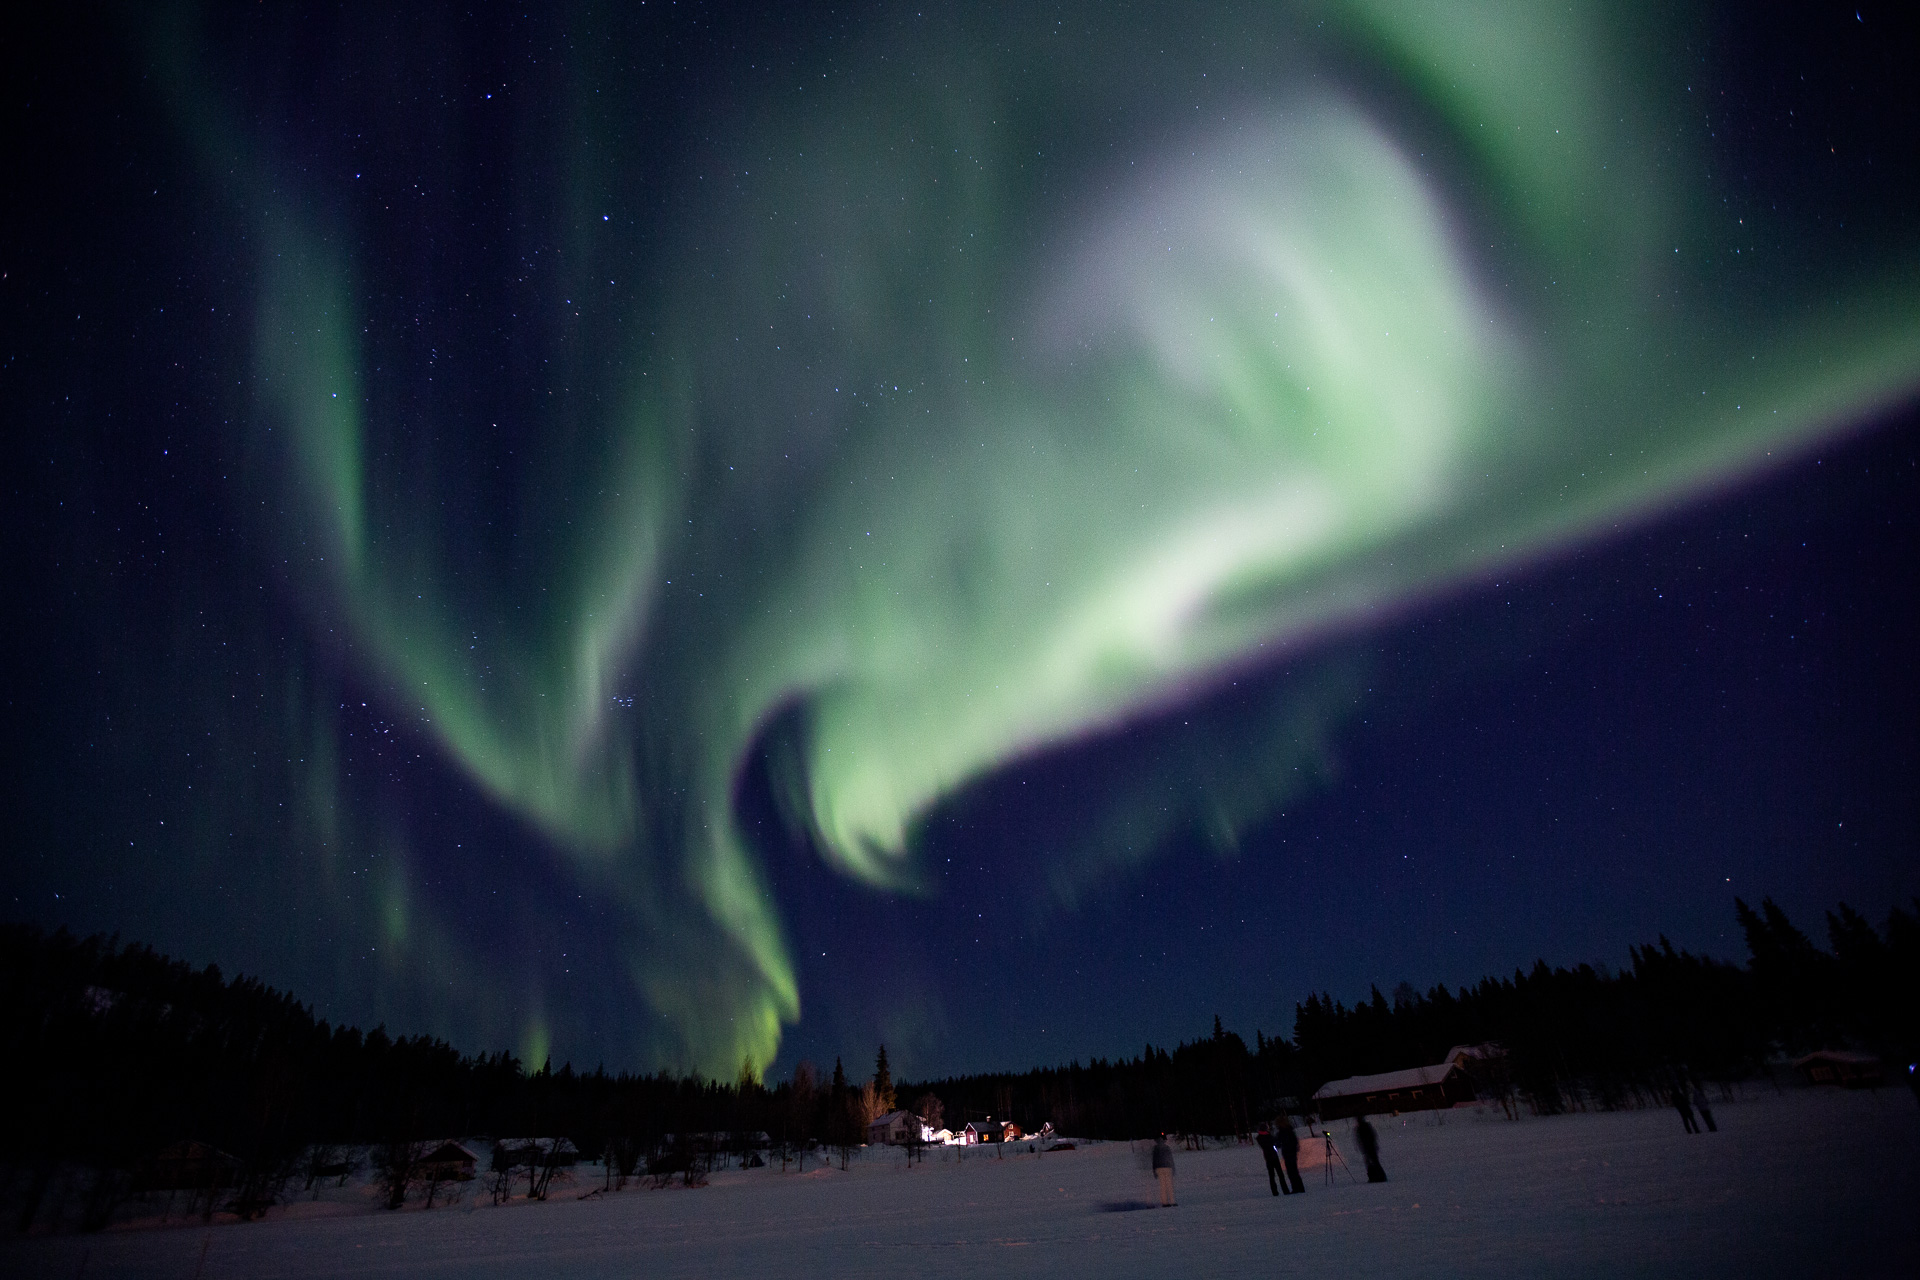 Polarlicht ist wohl die mit Abstand ausgefuchsteste Art, die Natur für sich malen zu lassen. Bei unserer <a href="https://www.diefotofuechse.com/de/fotoreisen/fotoreise-finnland//" target="_blank" rel="noopener">Fotoreise Finnland im Winter</a> gehen wir auf Jagd nach dem Fuchsfeuer. <br /> 2,5 Sekunden · Blende 2,8 · ISO 1600